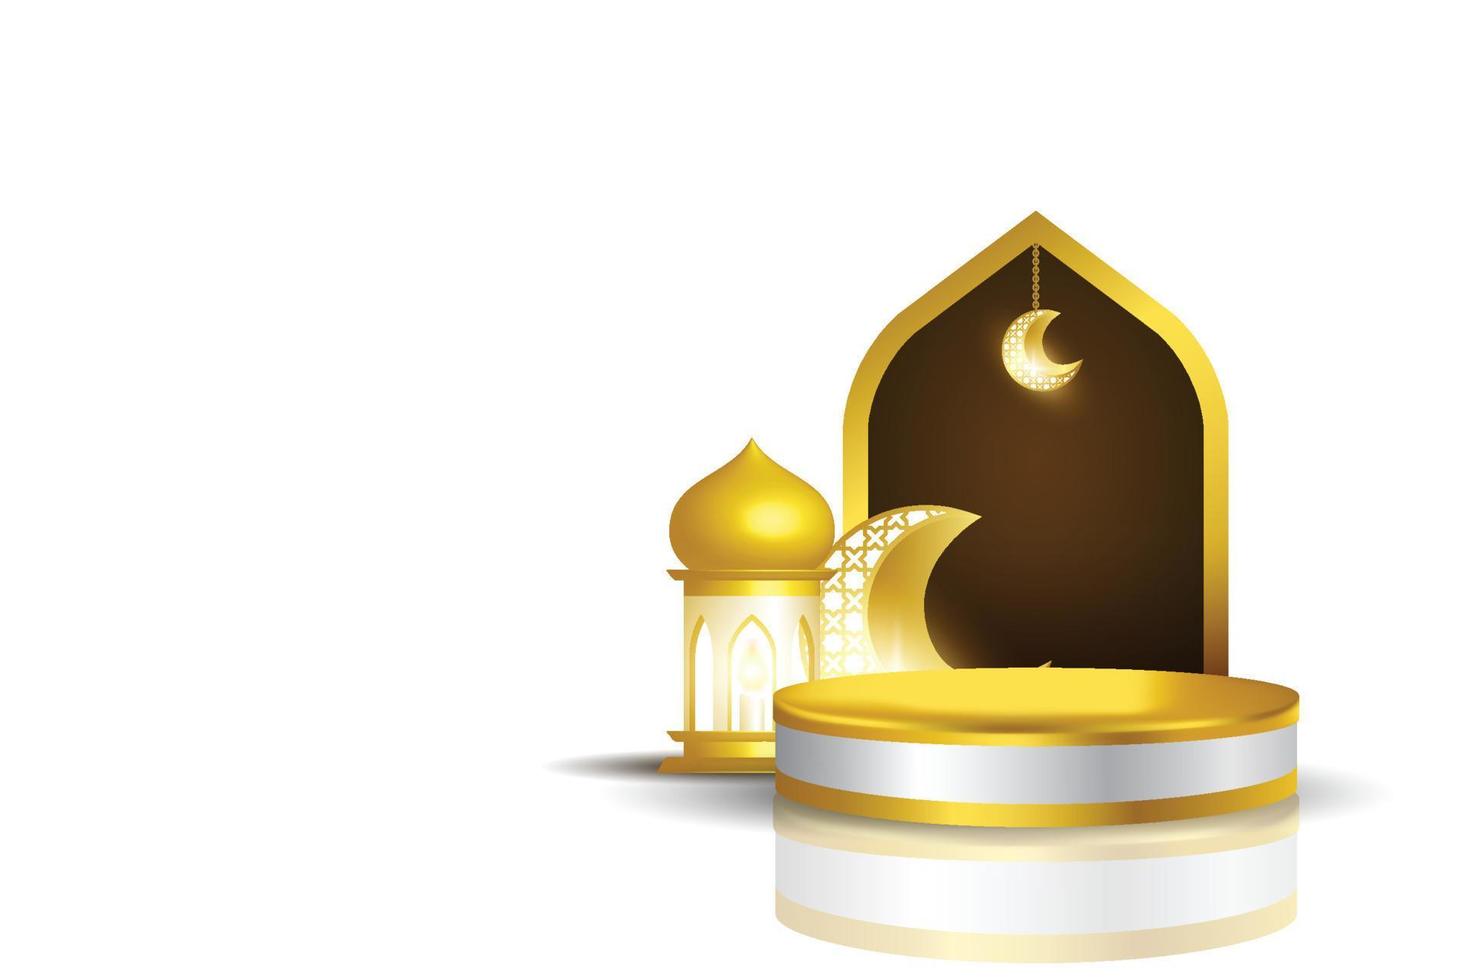 conception de modèle de podium pour afficher le produit avec le concept islamique, ramadan kareem, eid mubarak, image vectorielle vecteur